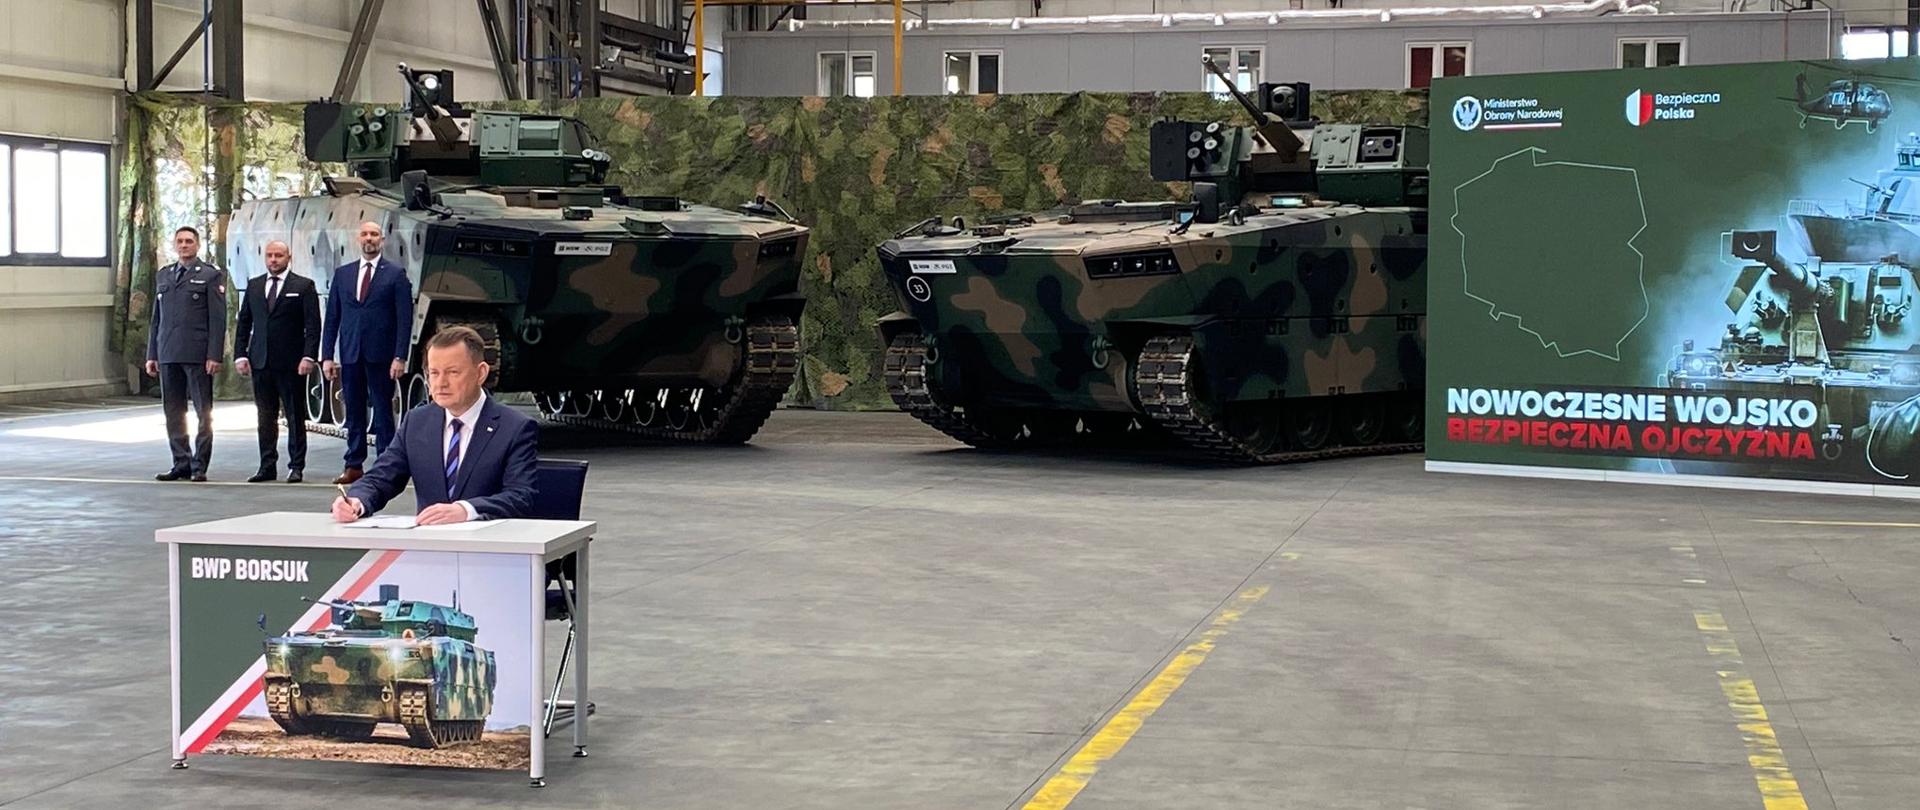 Podpisanie umowy ramowej na dostawy bojowych wozów piechoty BORSUK oraz wozów specjalistycznych dla SZ RP